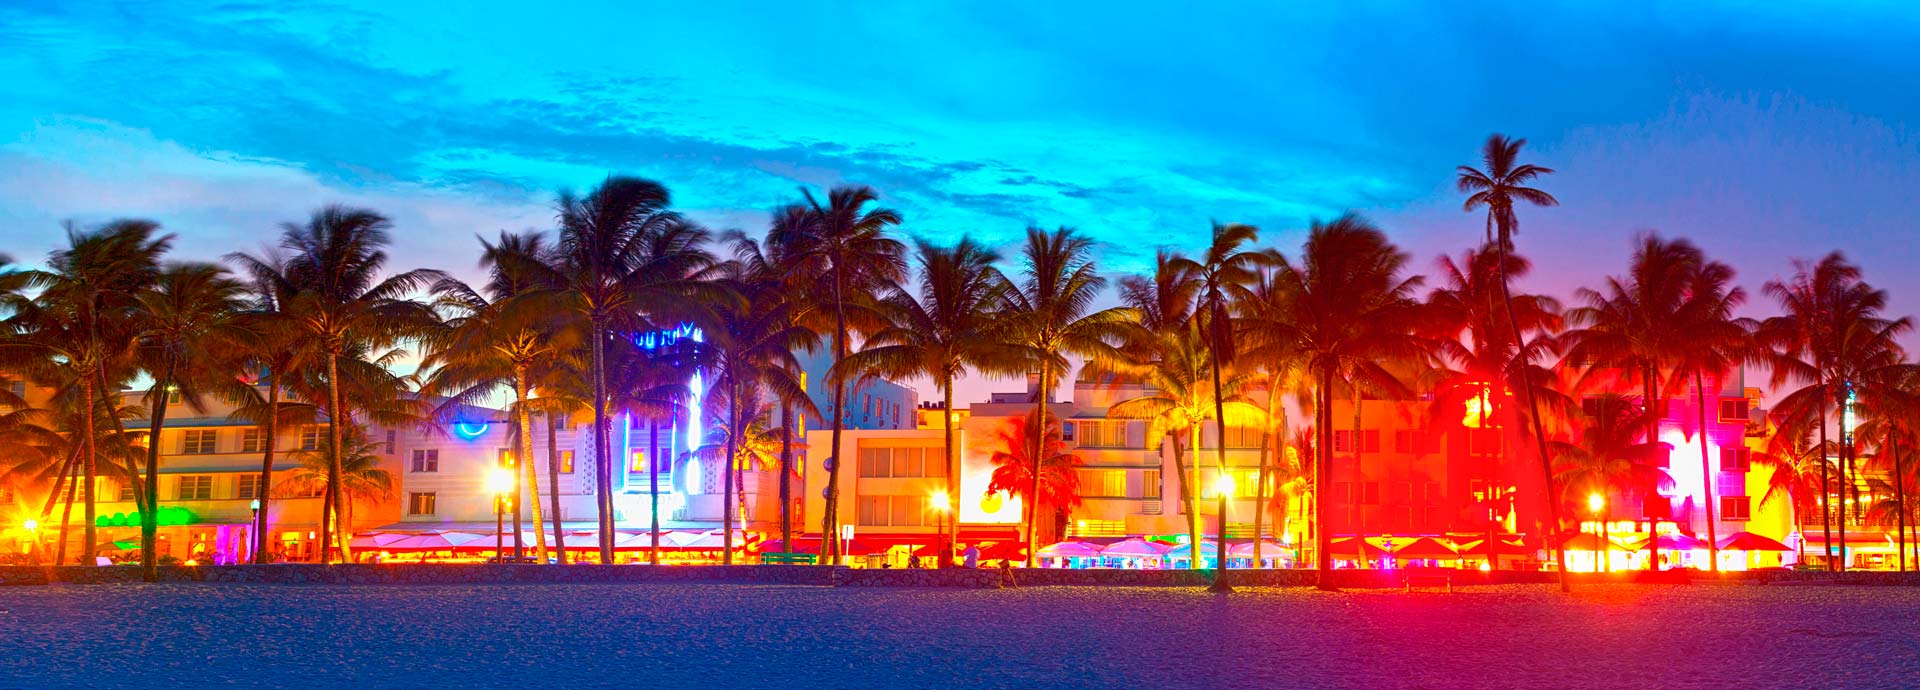 Aluguel de carros em Miami com descontos para Brasileiros | RentingCarz